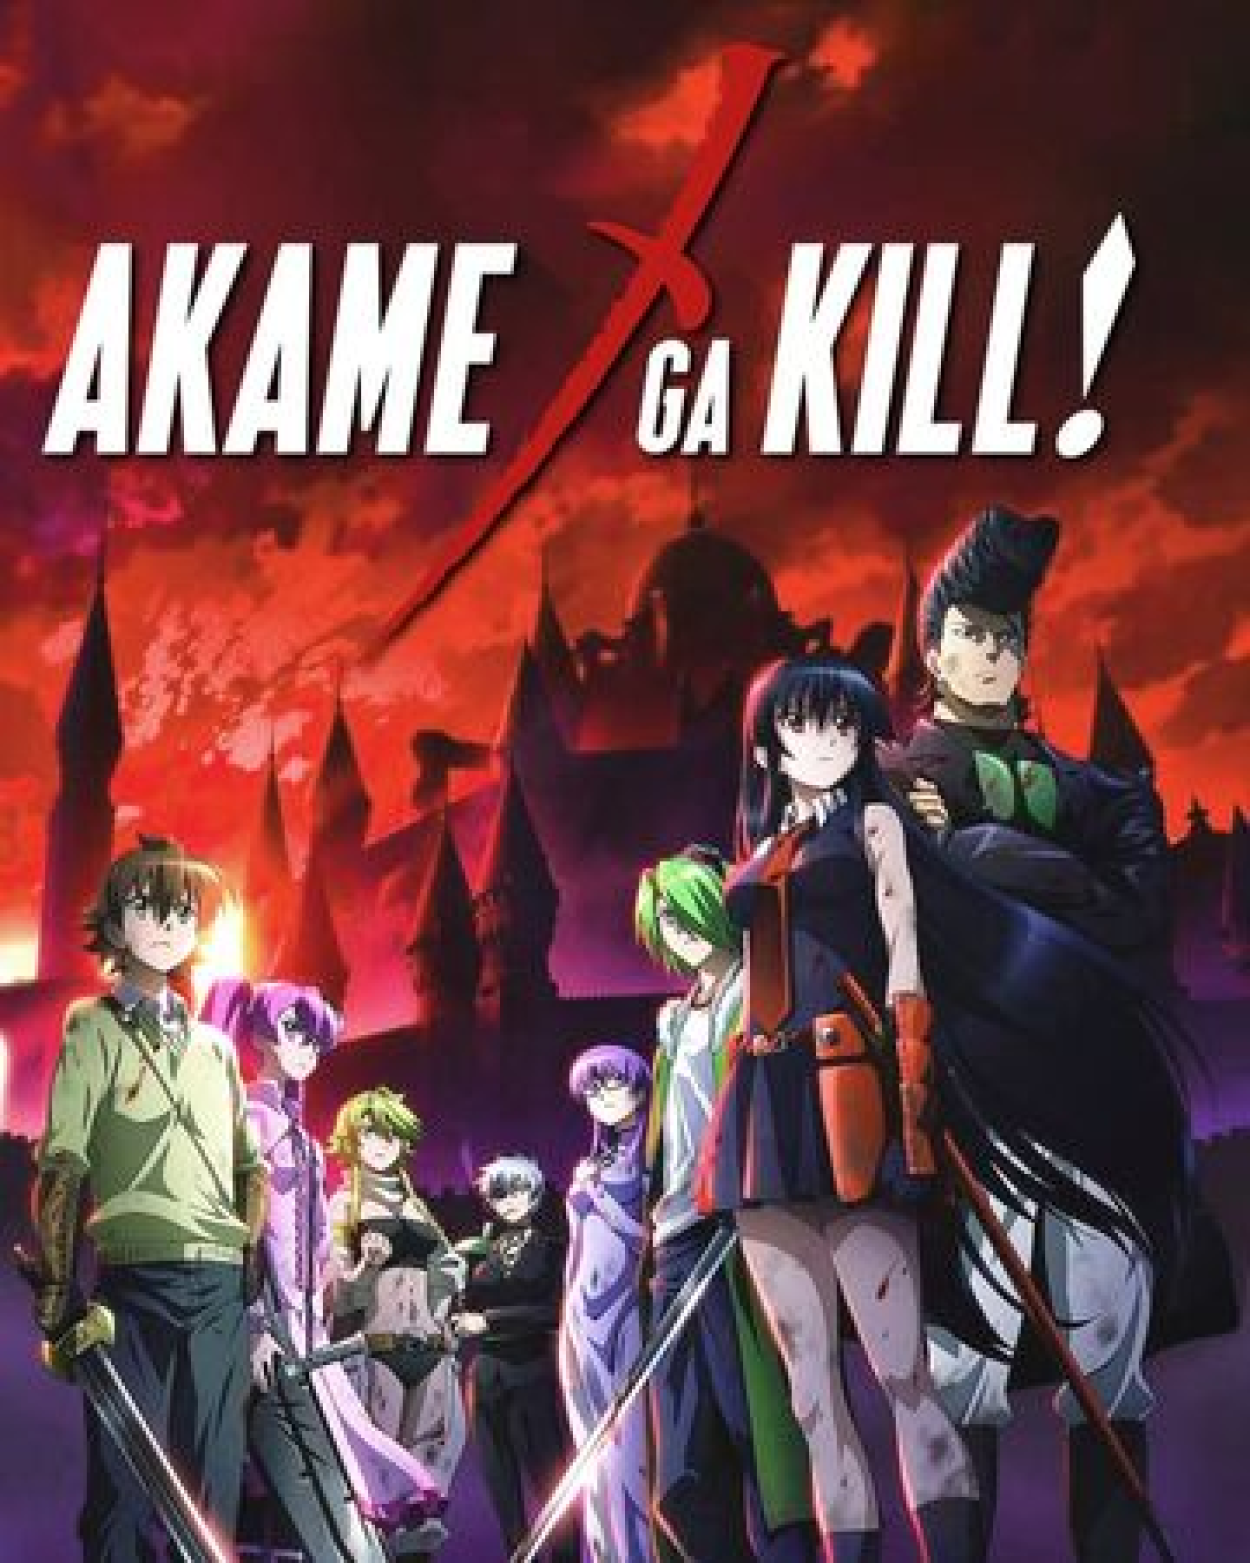 O asterisco guerra anime cartaz japonês anime filme série de tv